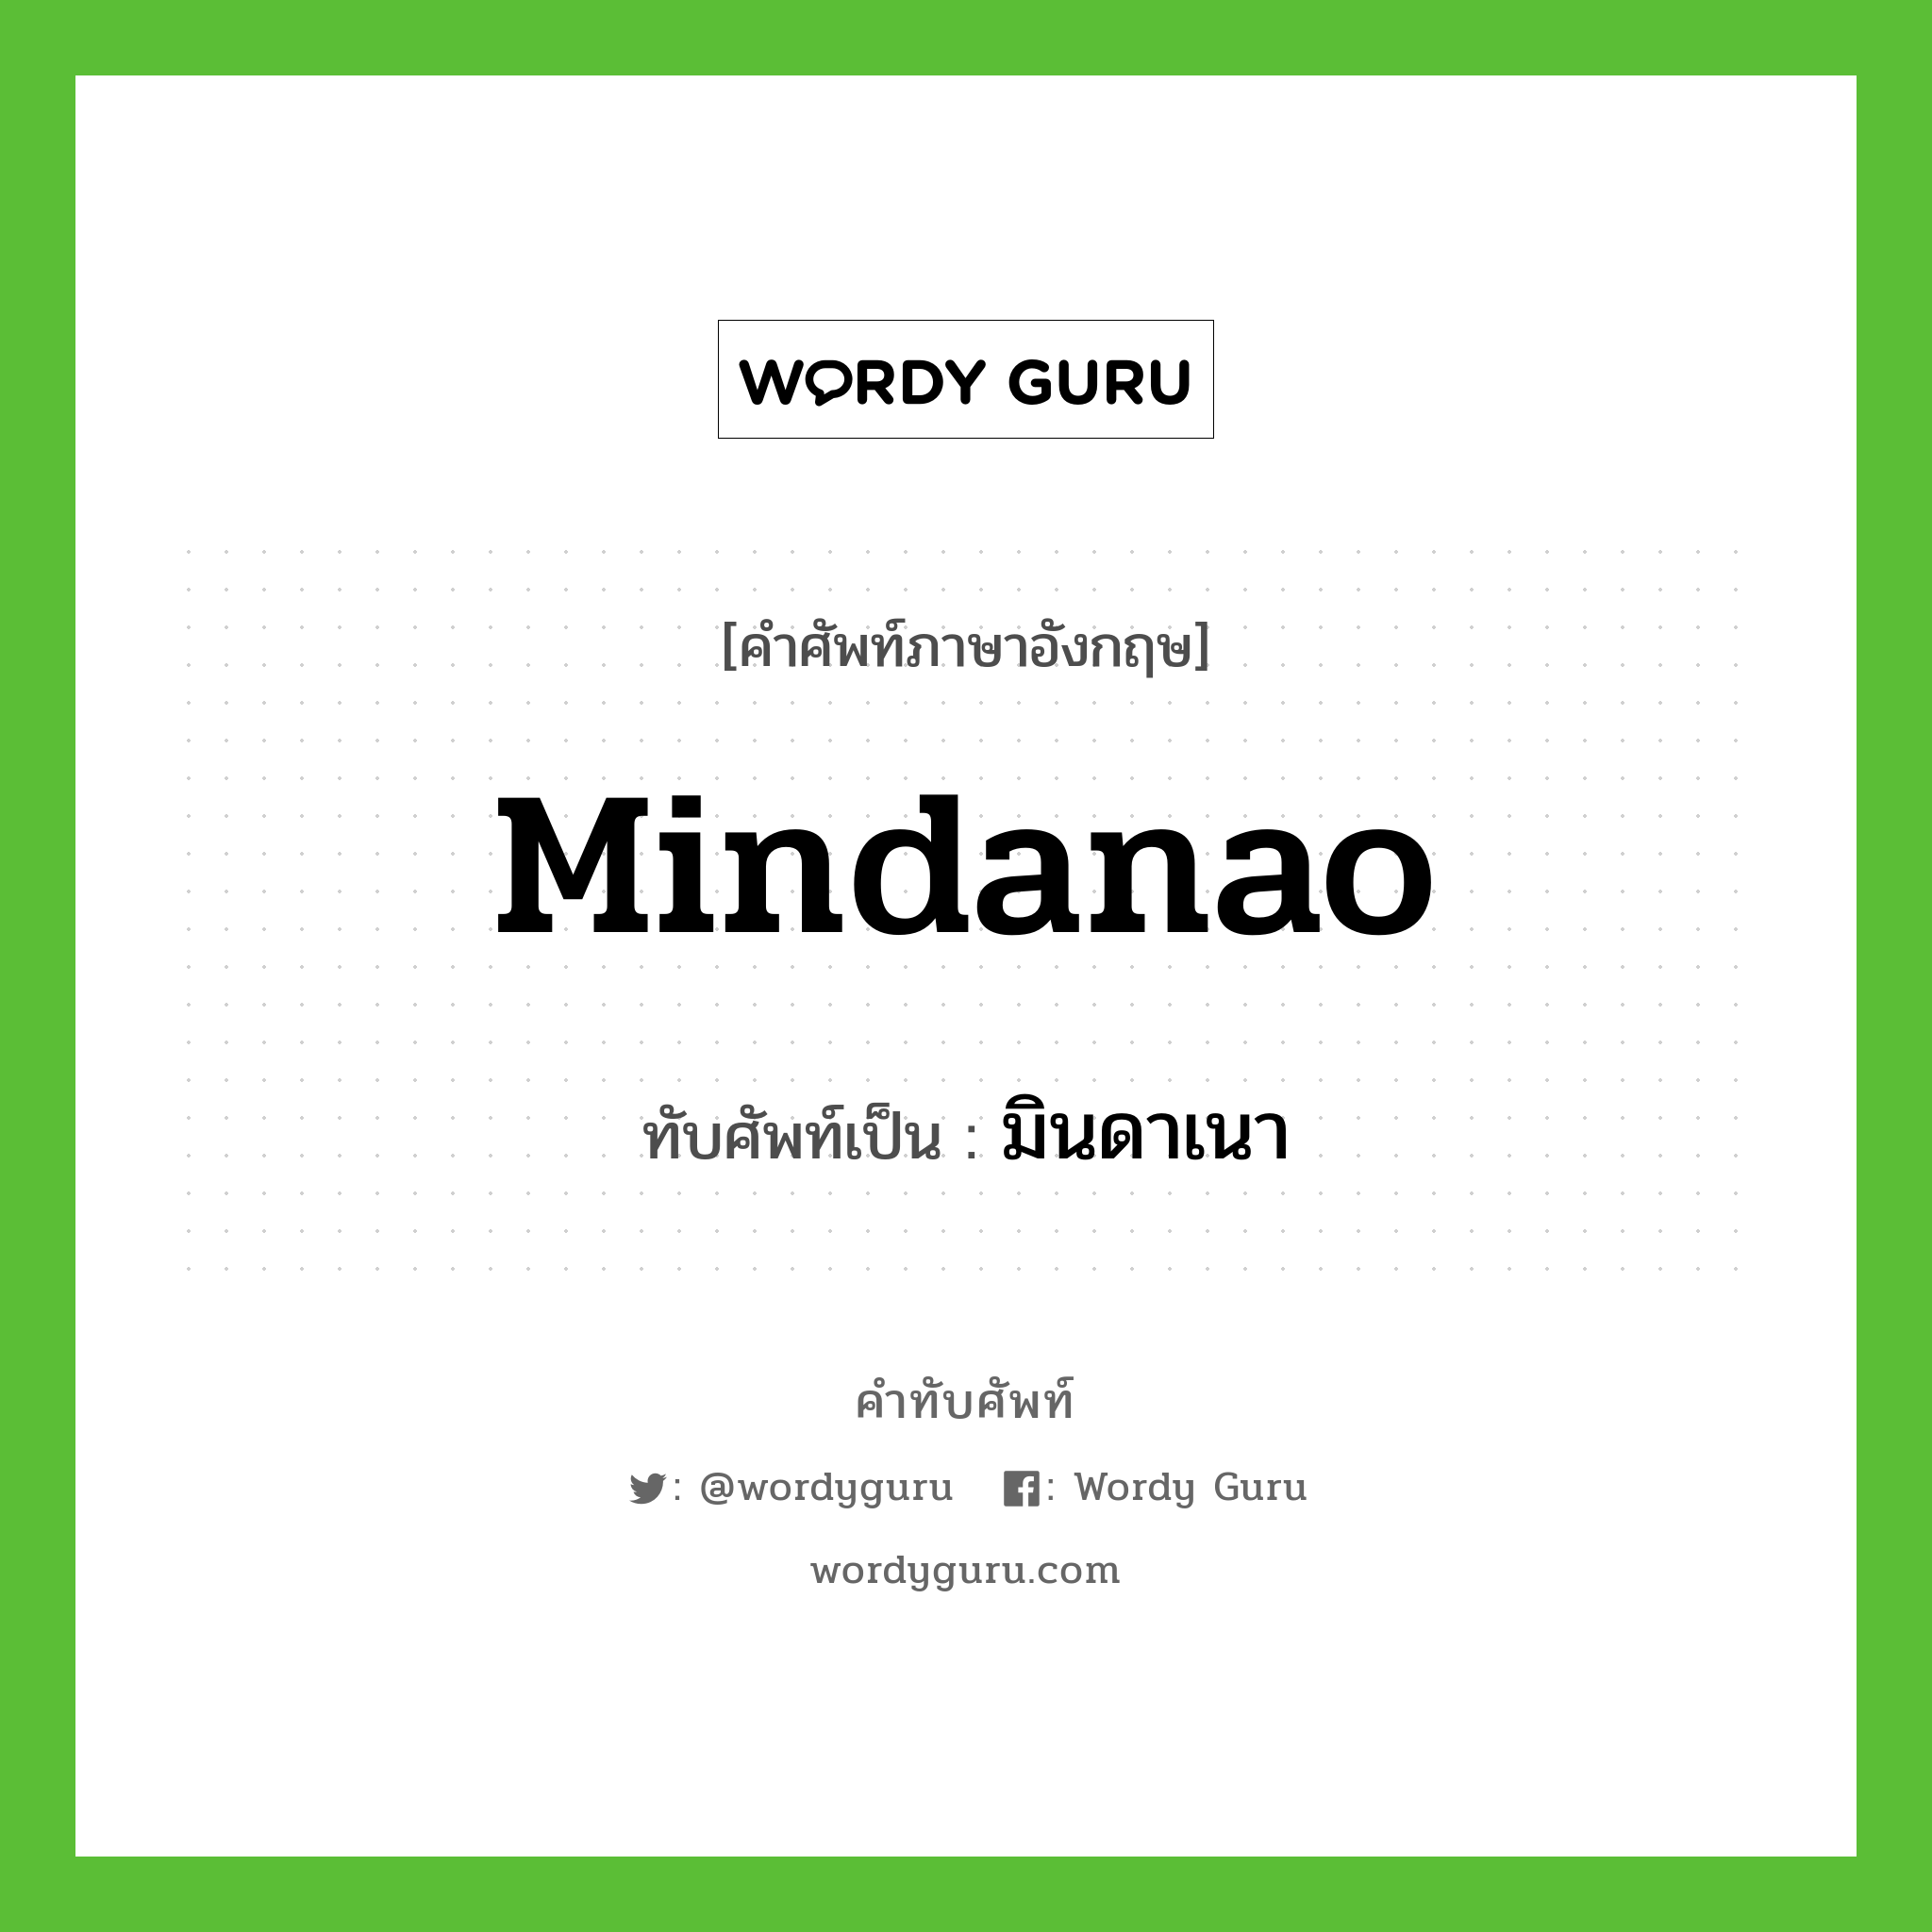 Mindanao เขียนเป็นคำไทยว่าอะไร?, คำศัพท์ภาษาอังกฤษ Mindanao ทับศัพท์เป็น มินดาเนา